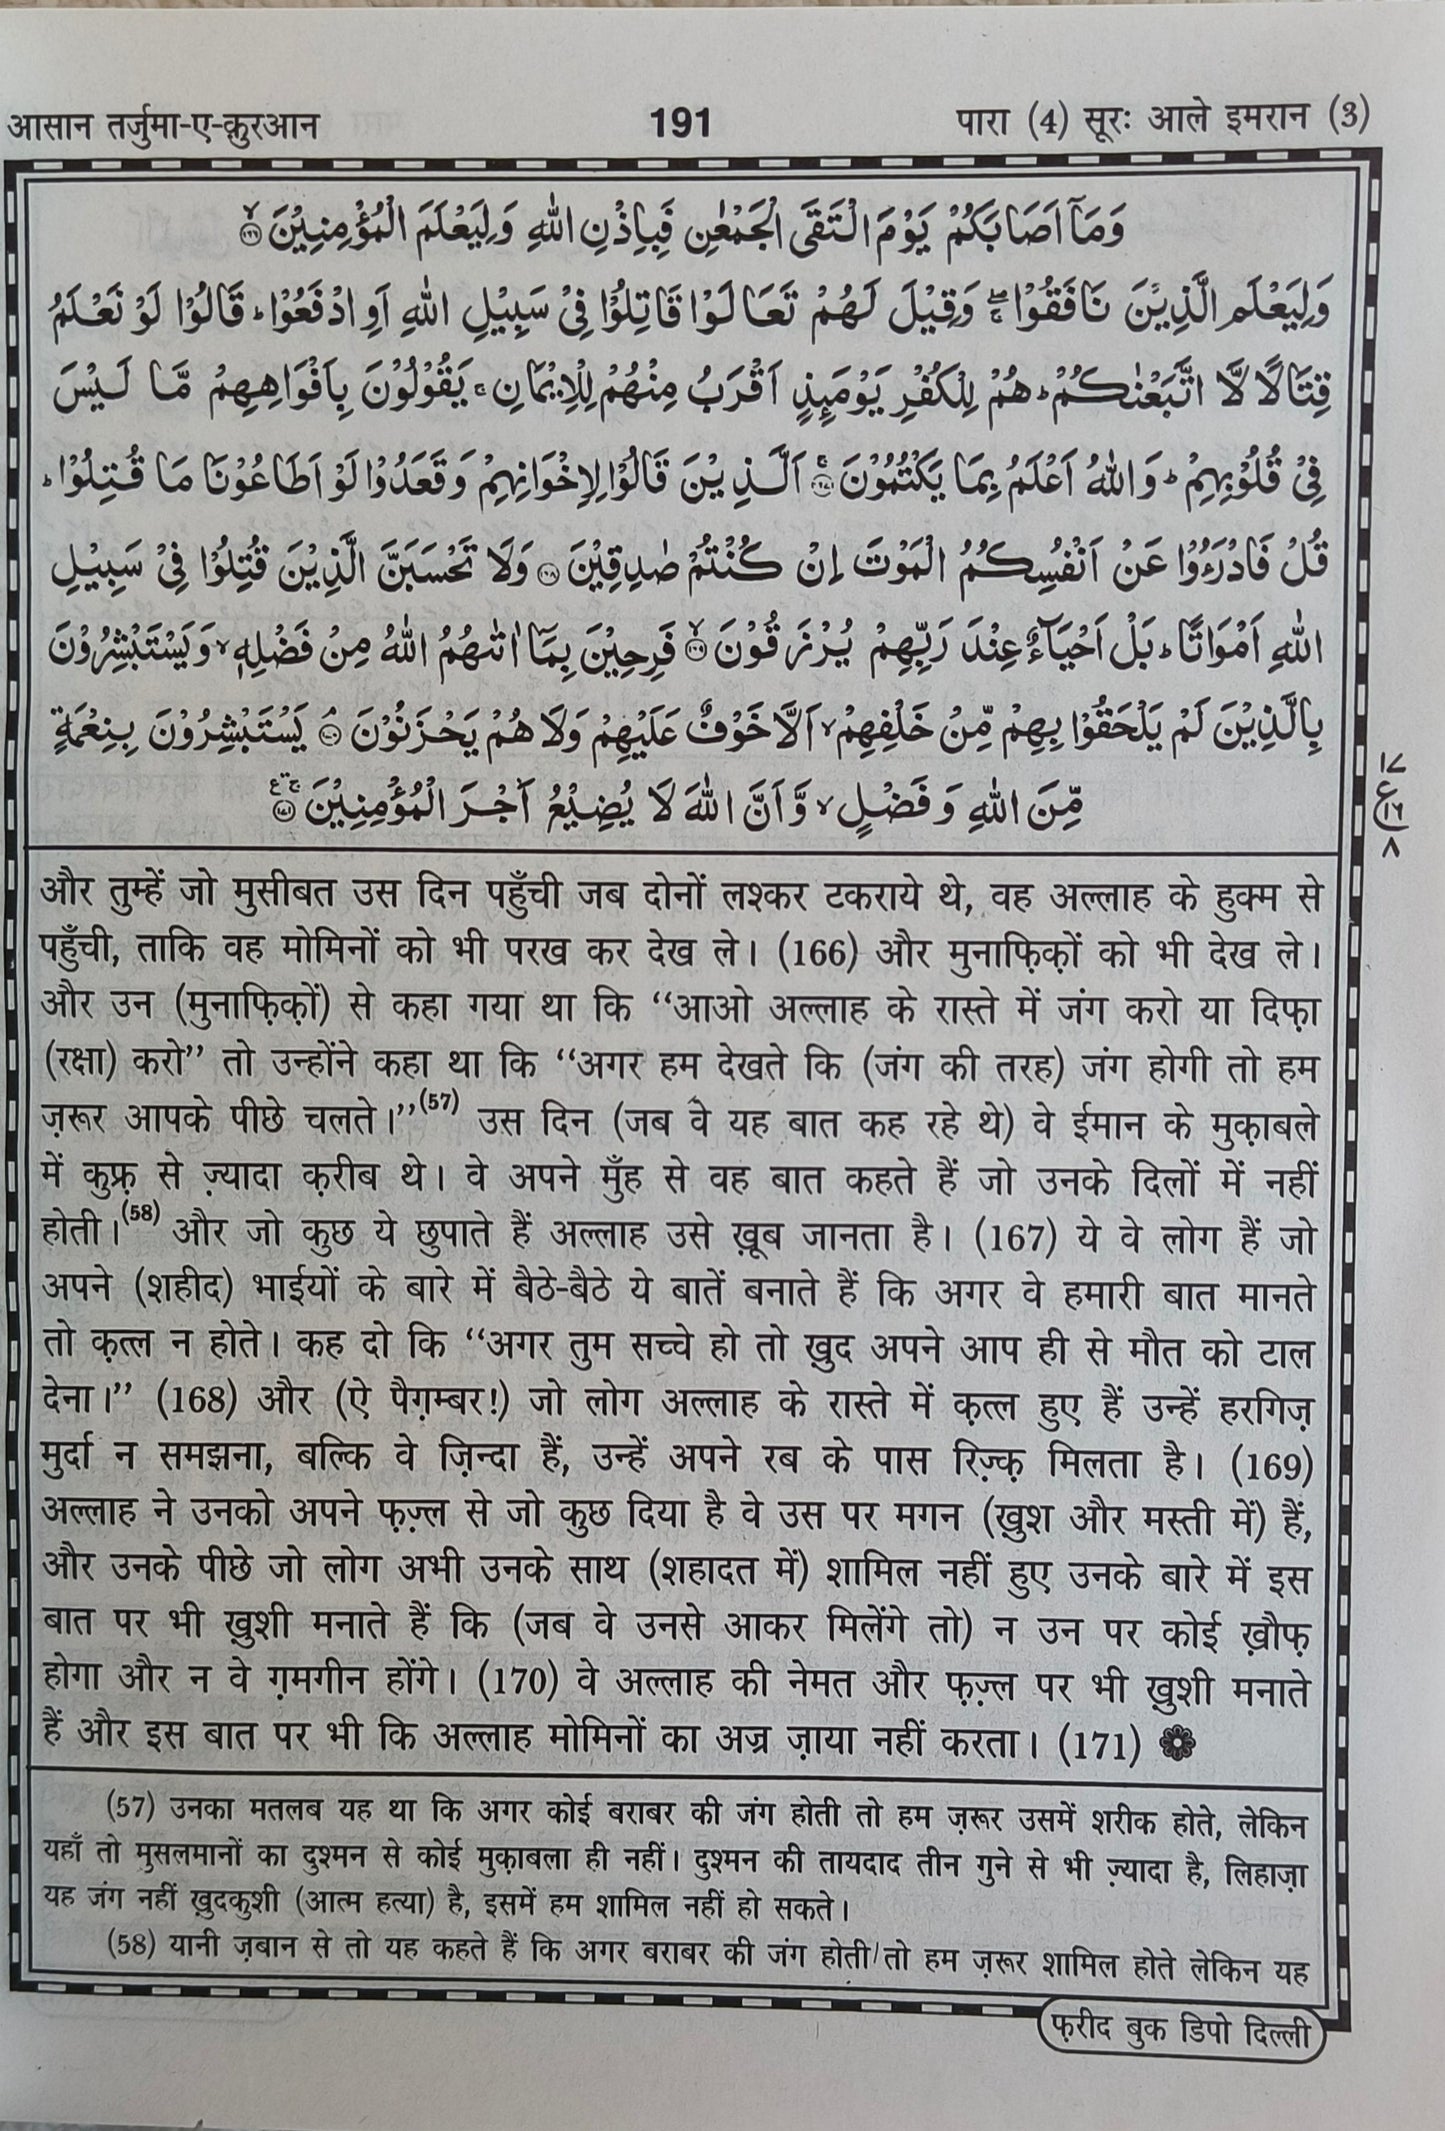 Aasaan Tarjumae Quran Tauzeeh-ul -Quran (Translation in Hindi Script) - alifthebookstore